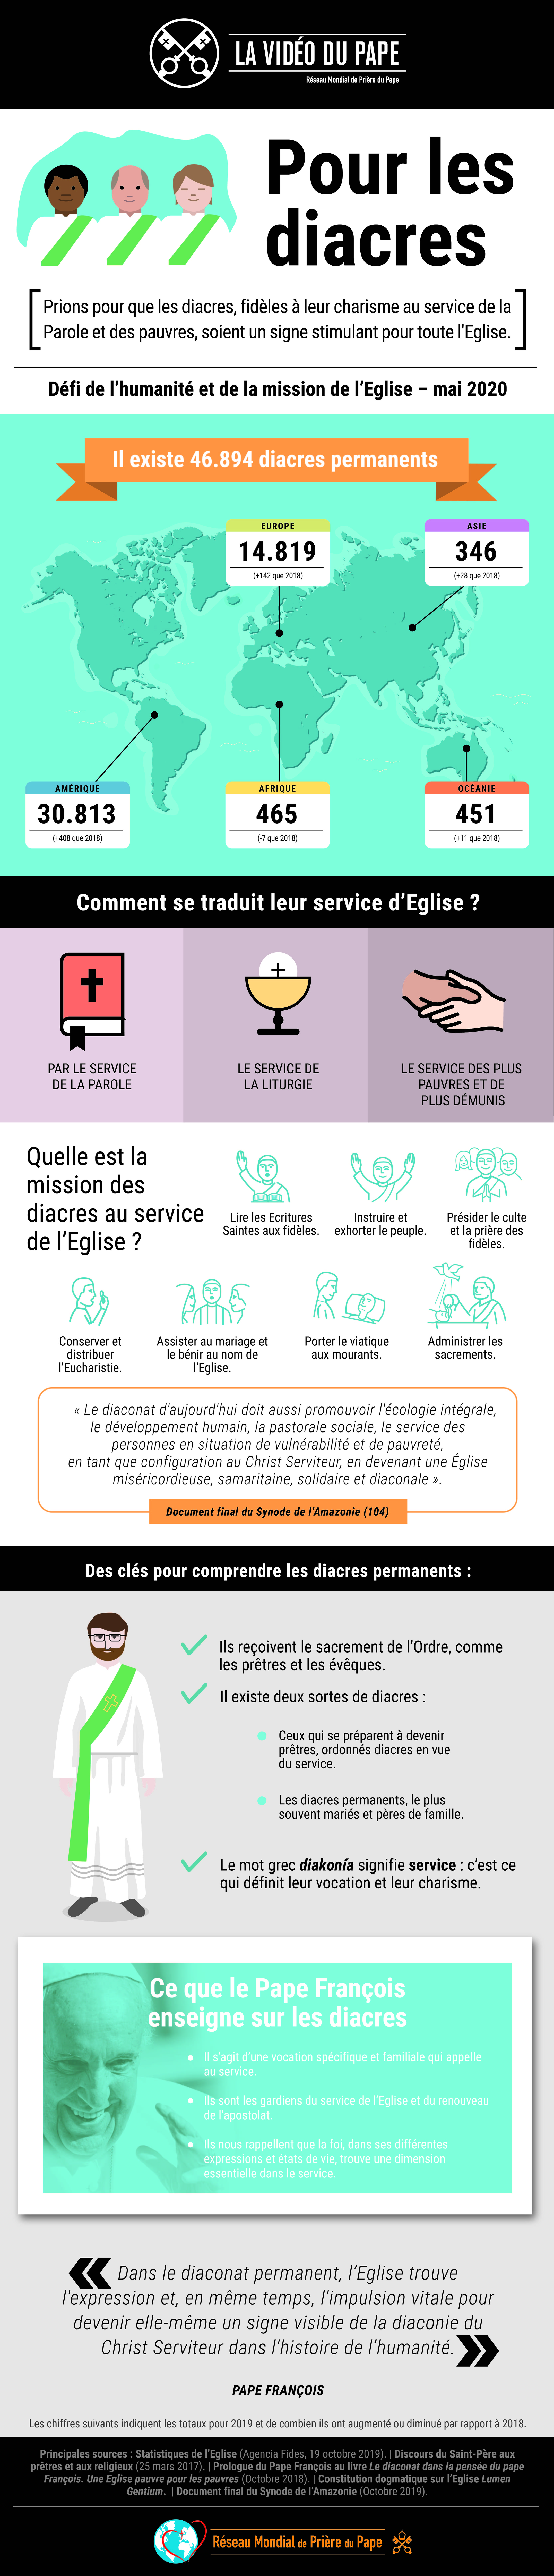 infographie-tpv-5-2020-fr-la-video-du-pape-pour-les-diacres.jpg